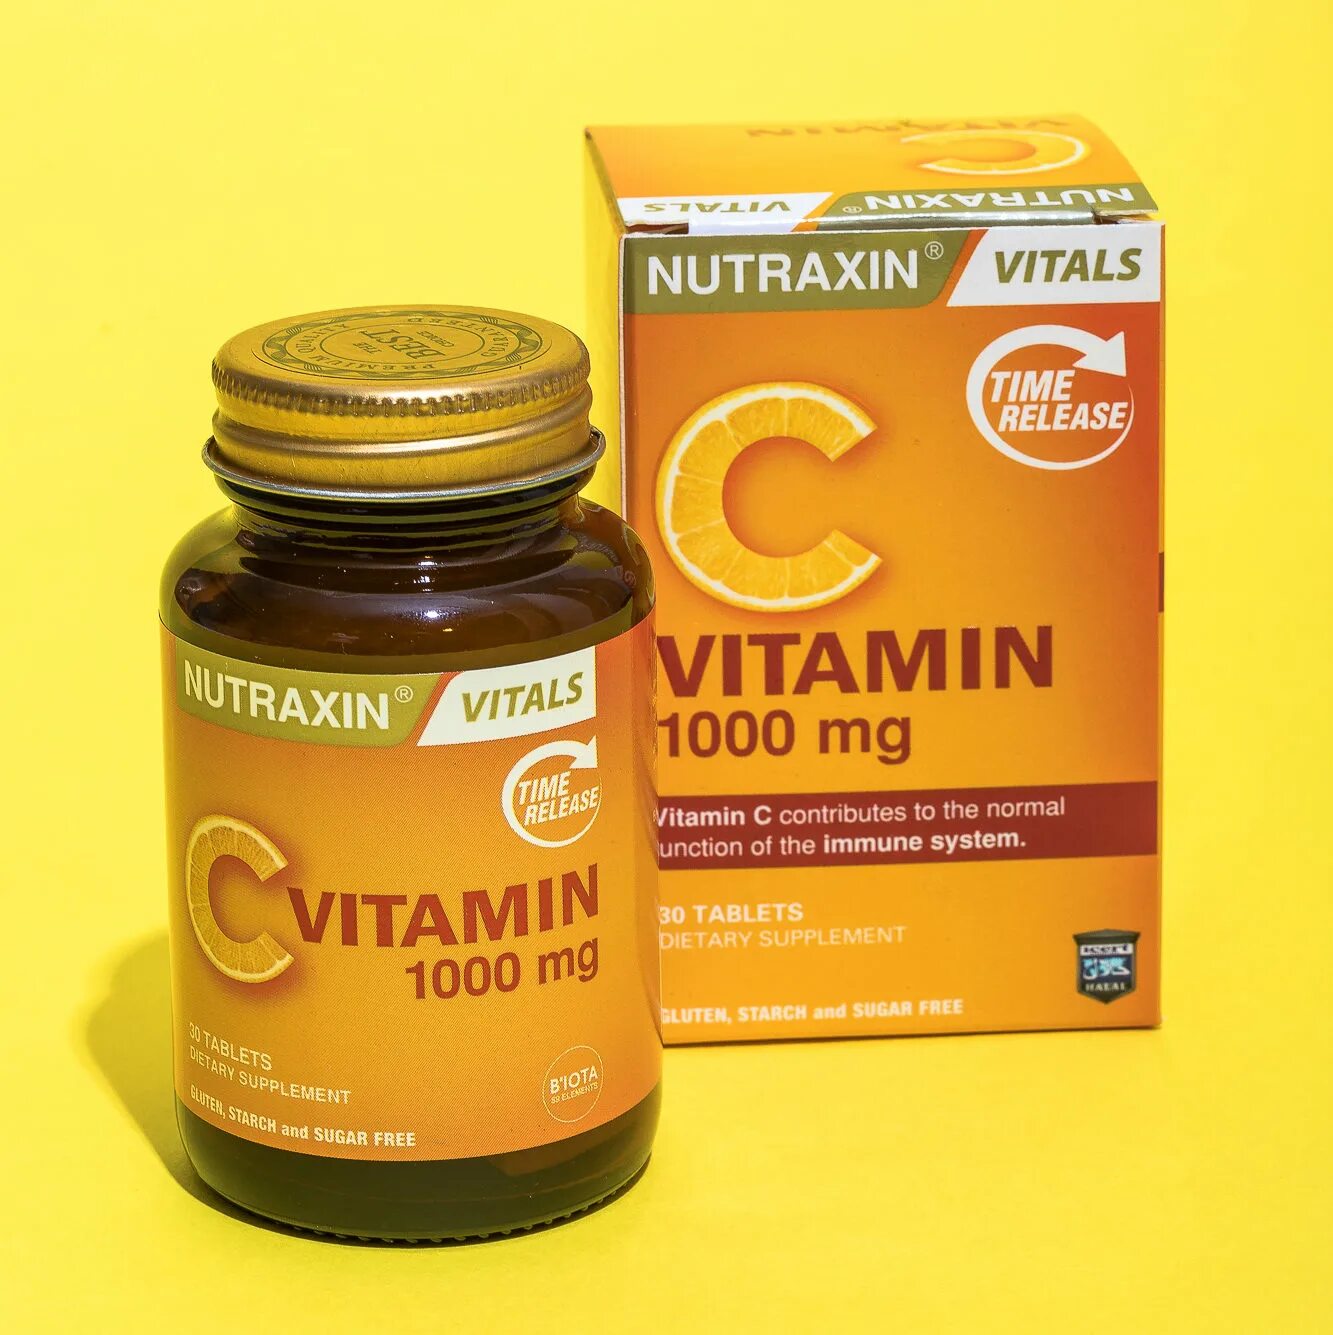 Nutraxin витамины. Nutraxin Vitals витамины c. Nutraxin витамины турецкие. Nutraxin витамин д3.